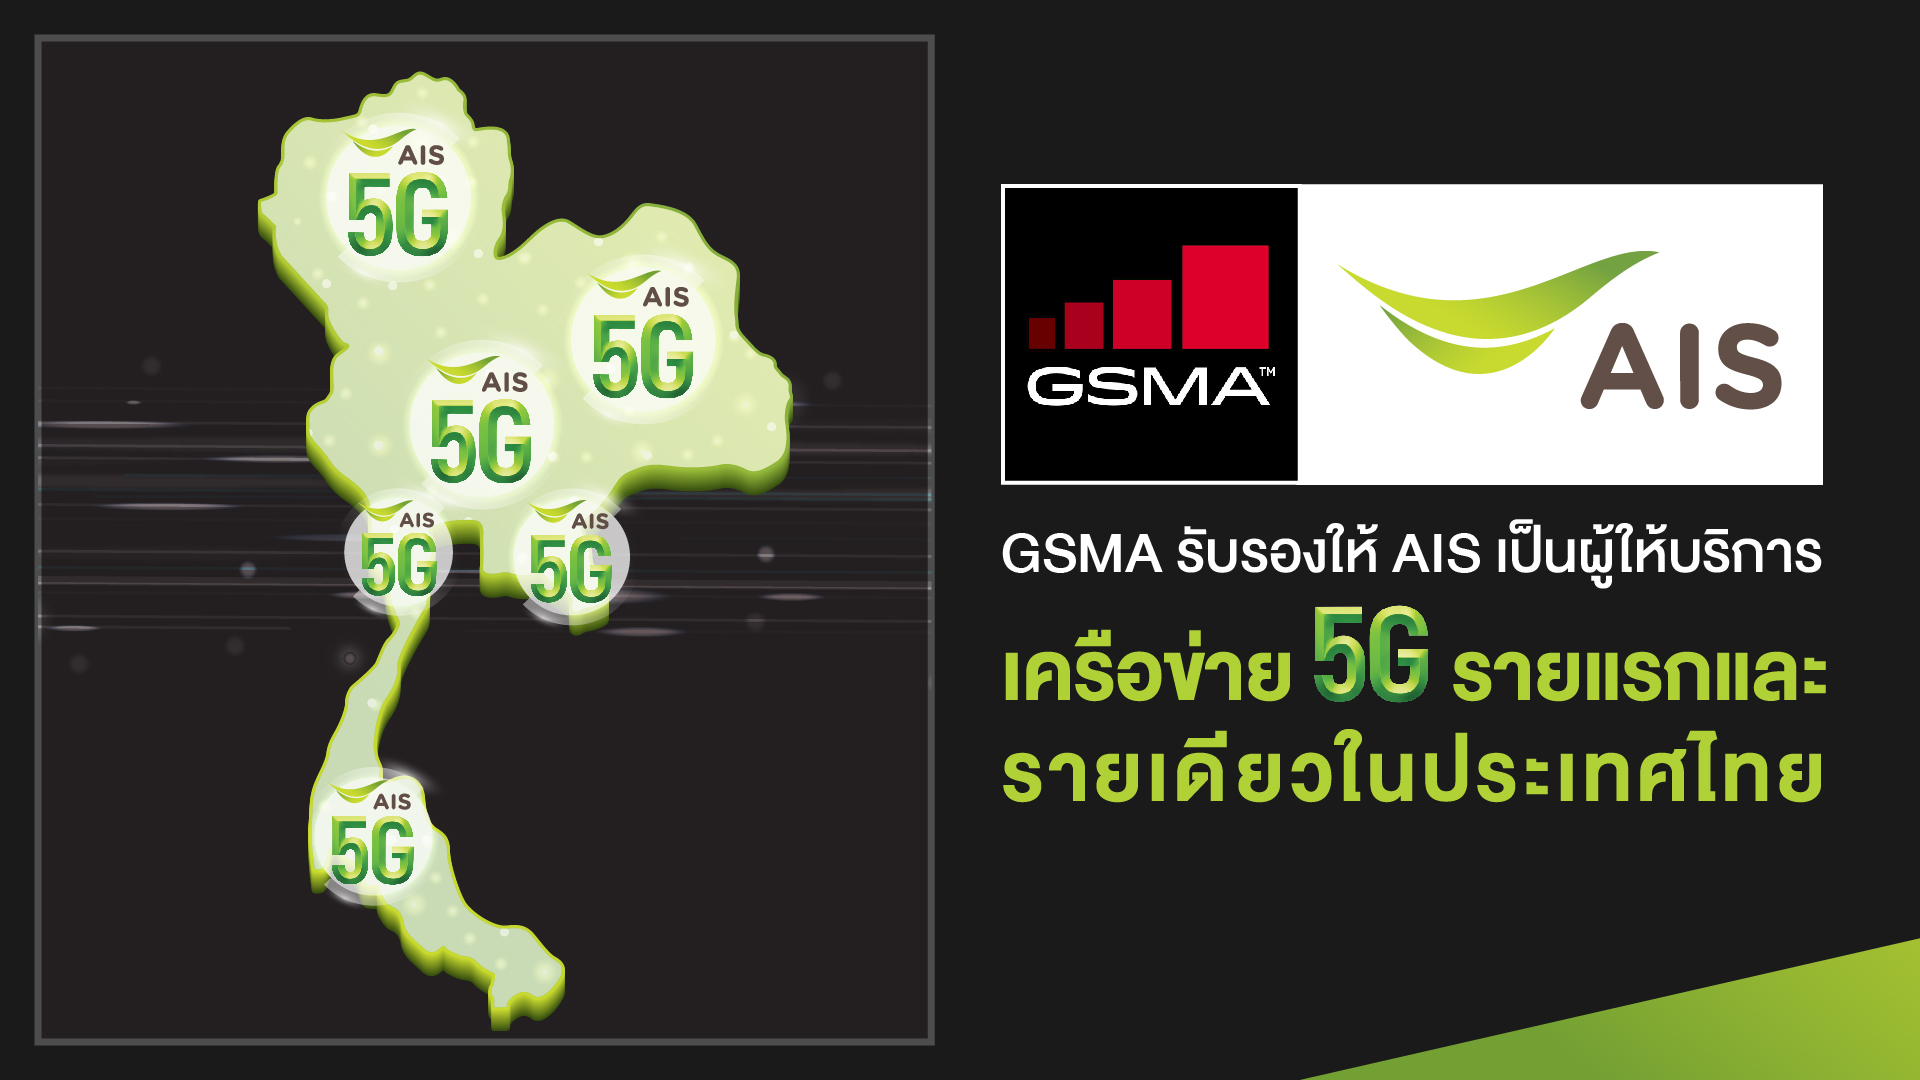 ว้าว! ประกาศรับรอง AIS เป็นผู้ให้บริการเครือข่าย 5G รายแรกและรายเดียวในประเทศไทย